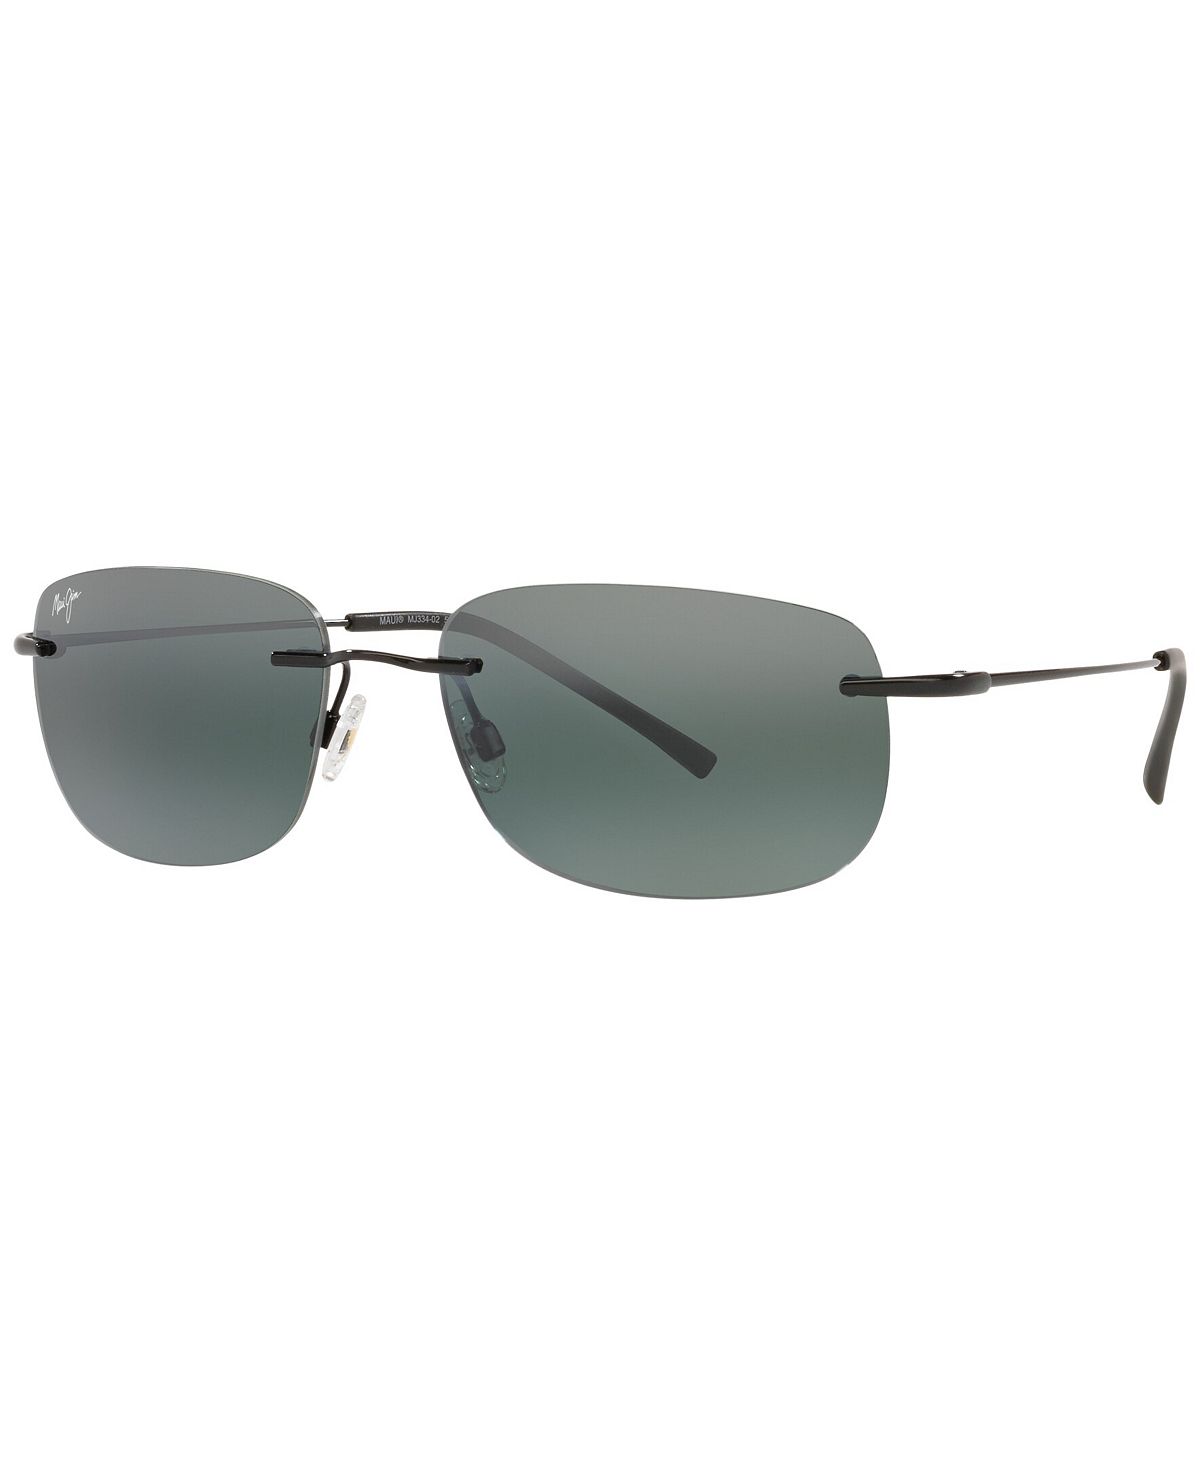 Поляризованные солнцезащитные очки унисекс, MJ000670 Ohai 59 Maui Jim, черный